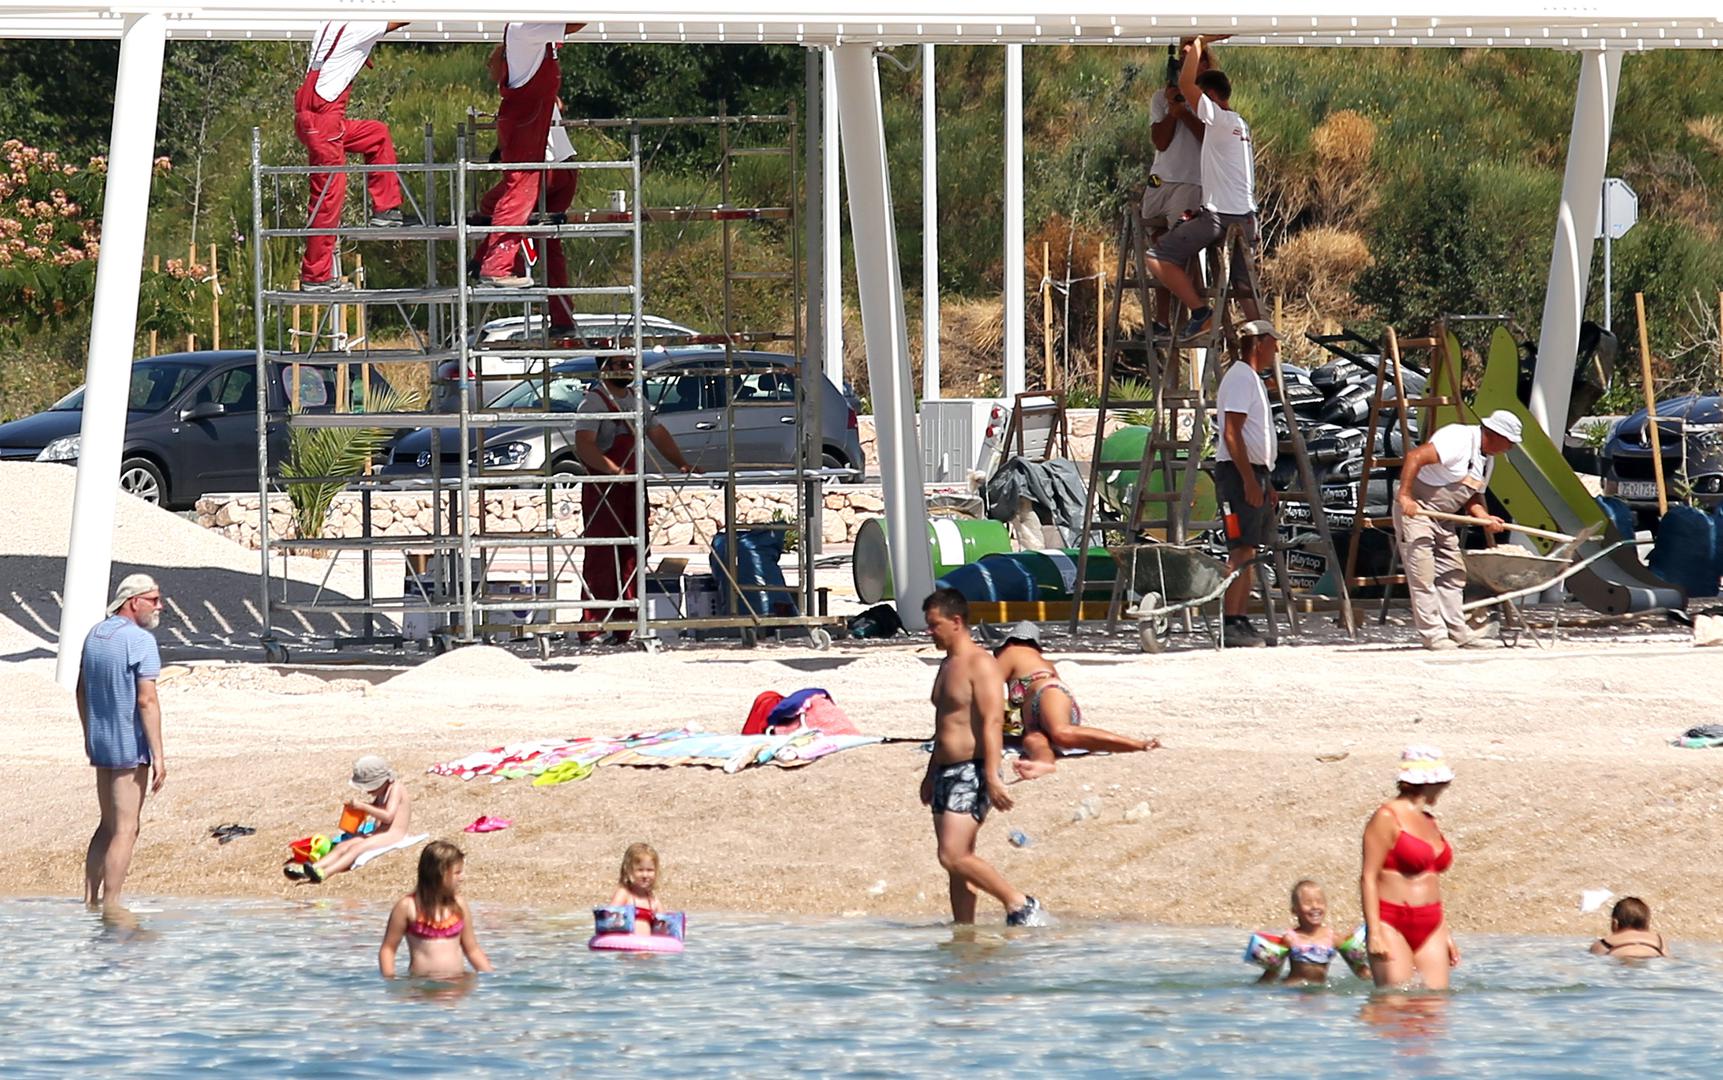 Iako je plaža u Brodarici, tzv. Rezalište trebala biti otvorena 15. lipnja, radovi su još u punom jeku. Bageri i suncobrani, radnici i kupači zajedno u srcu sezone na plaži.